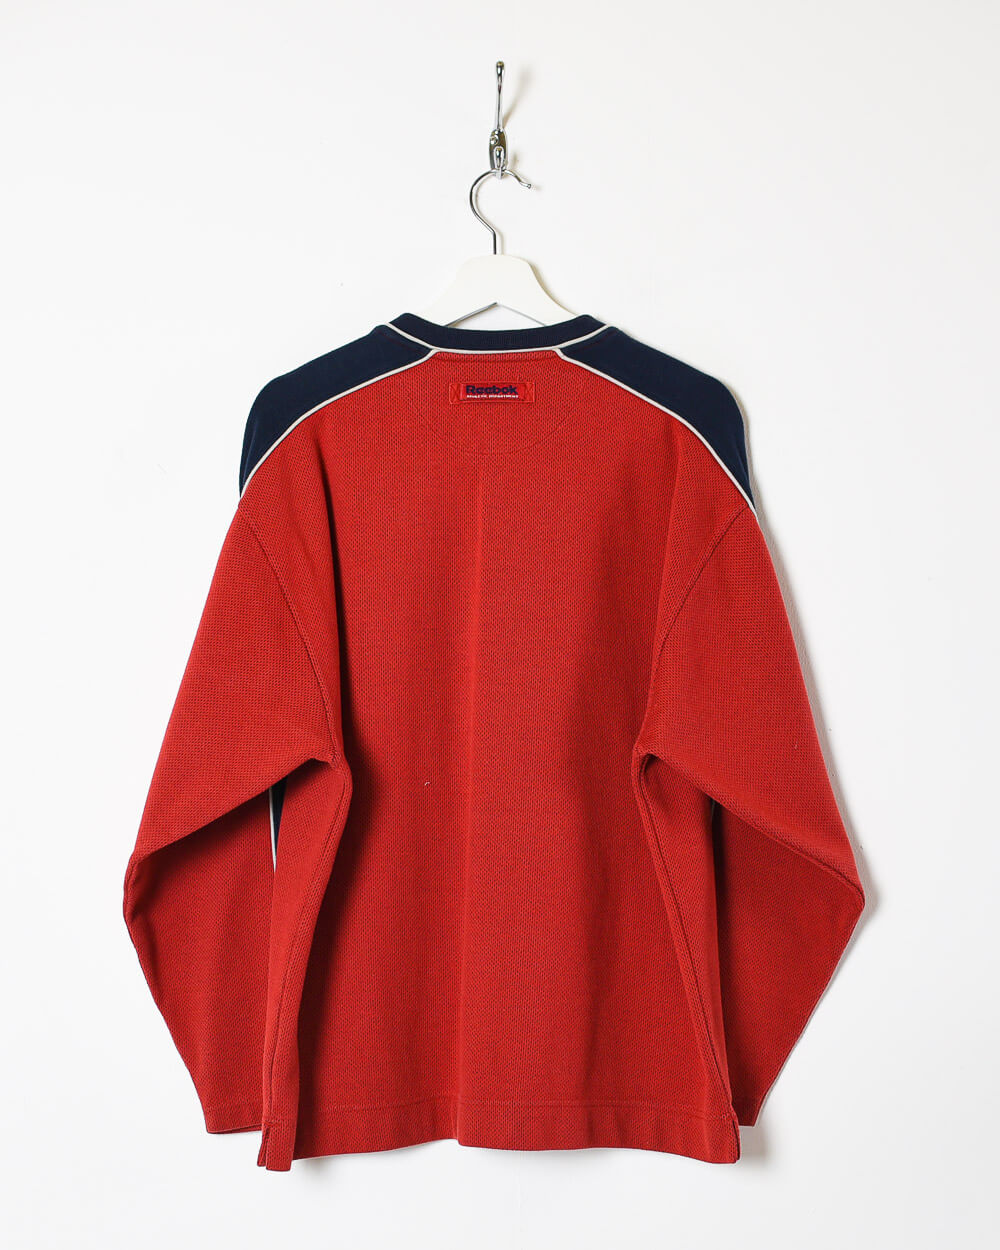 Red Reebok Athletic Department Sweatshirt - Large